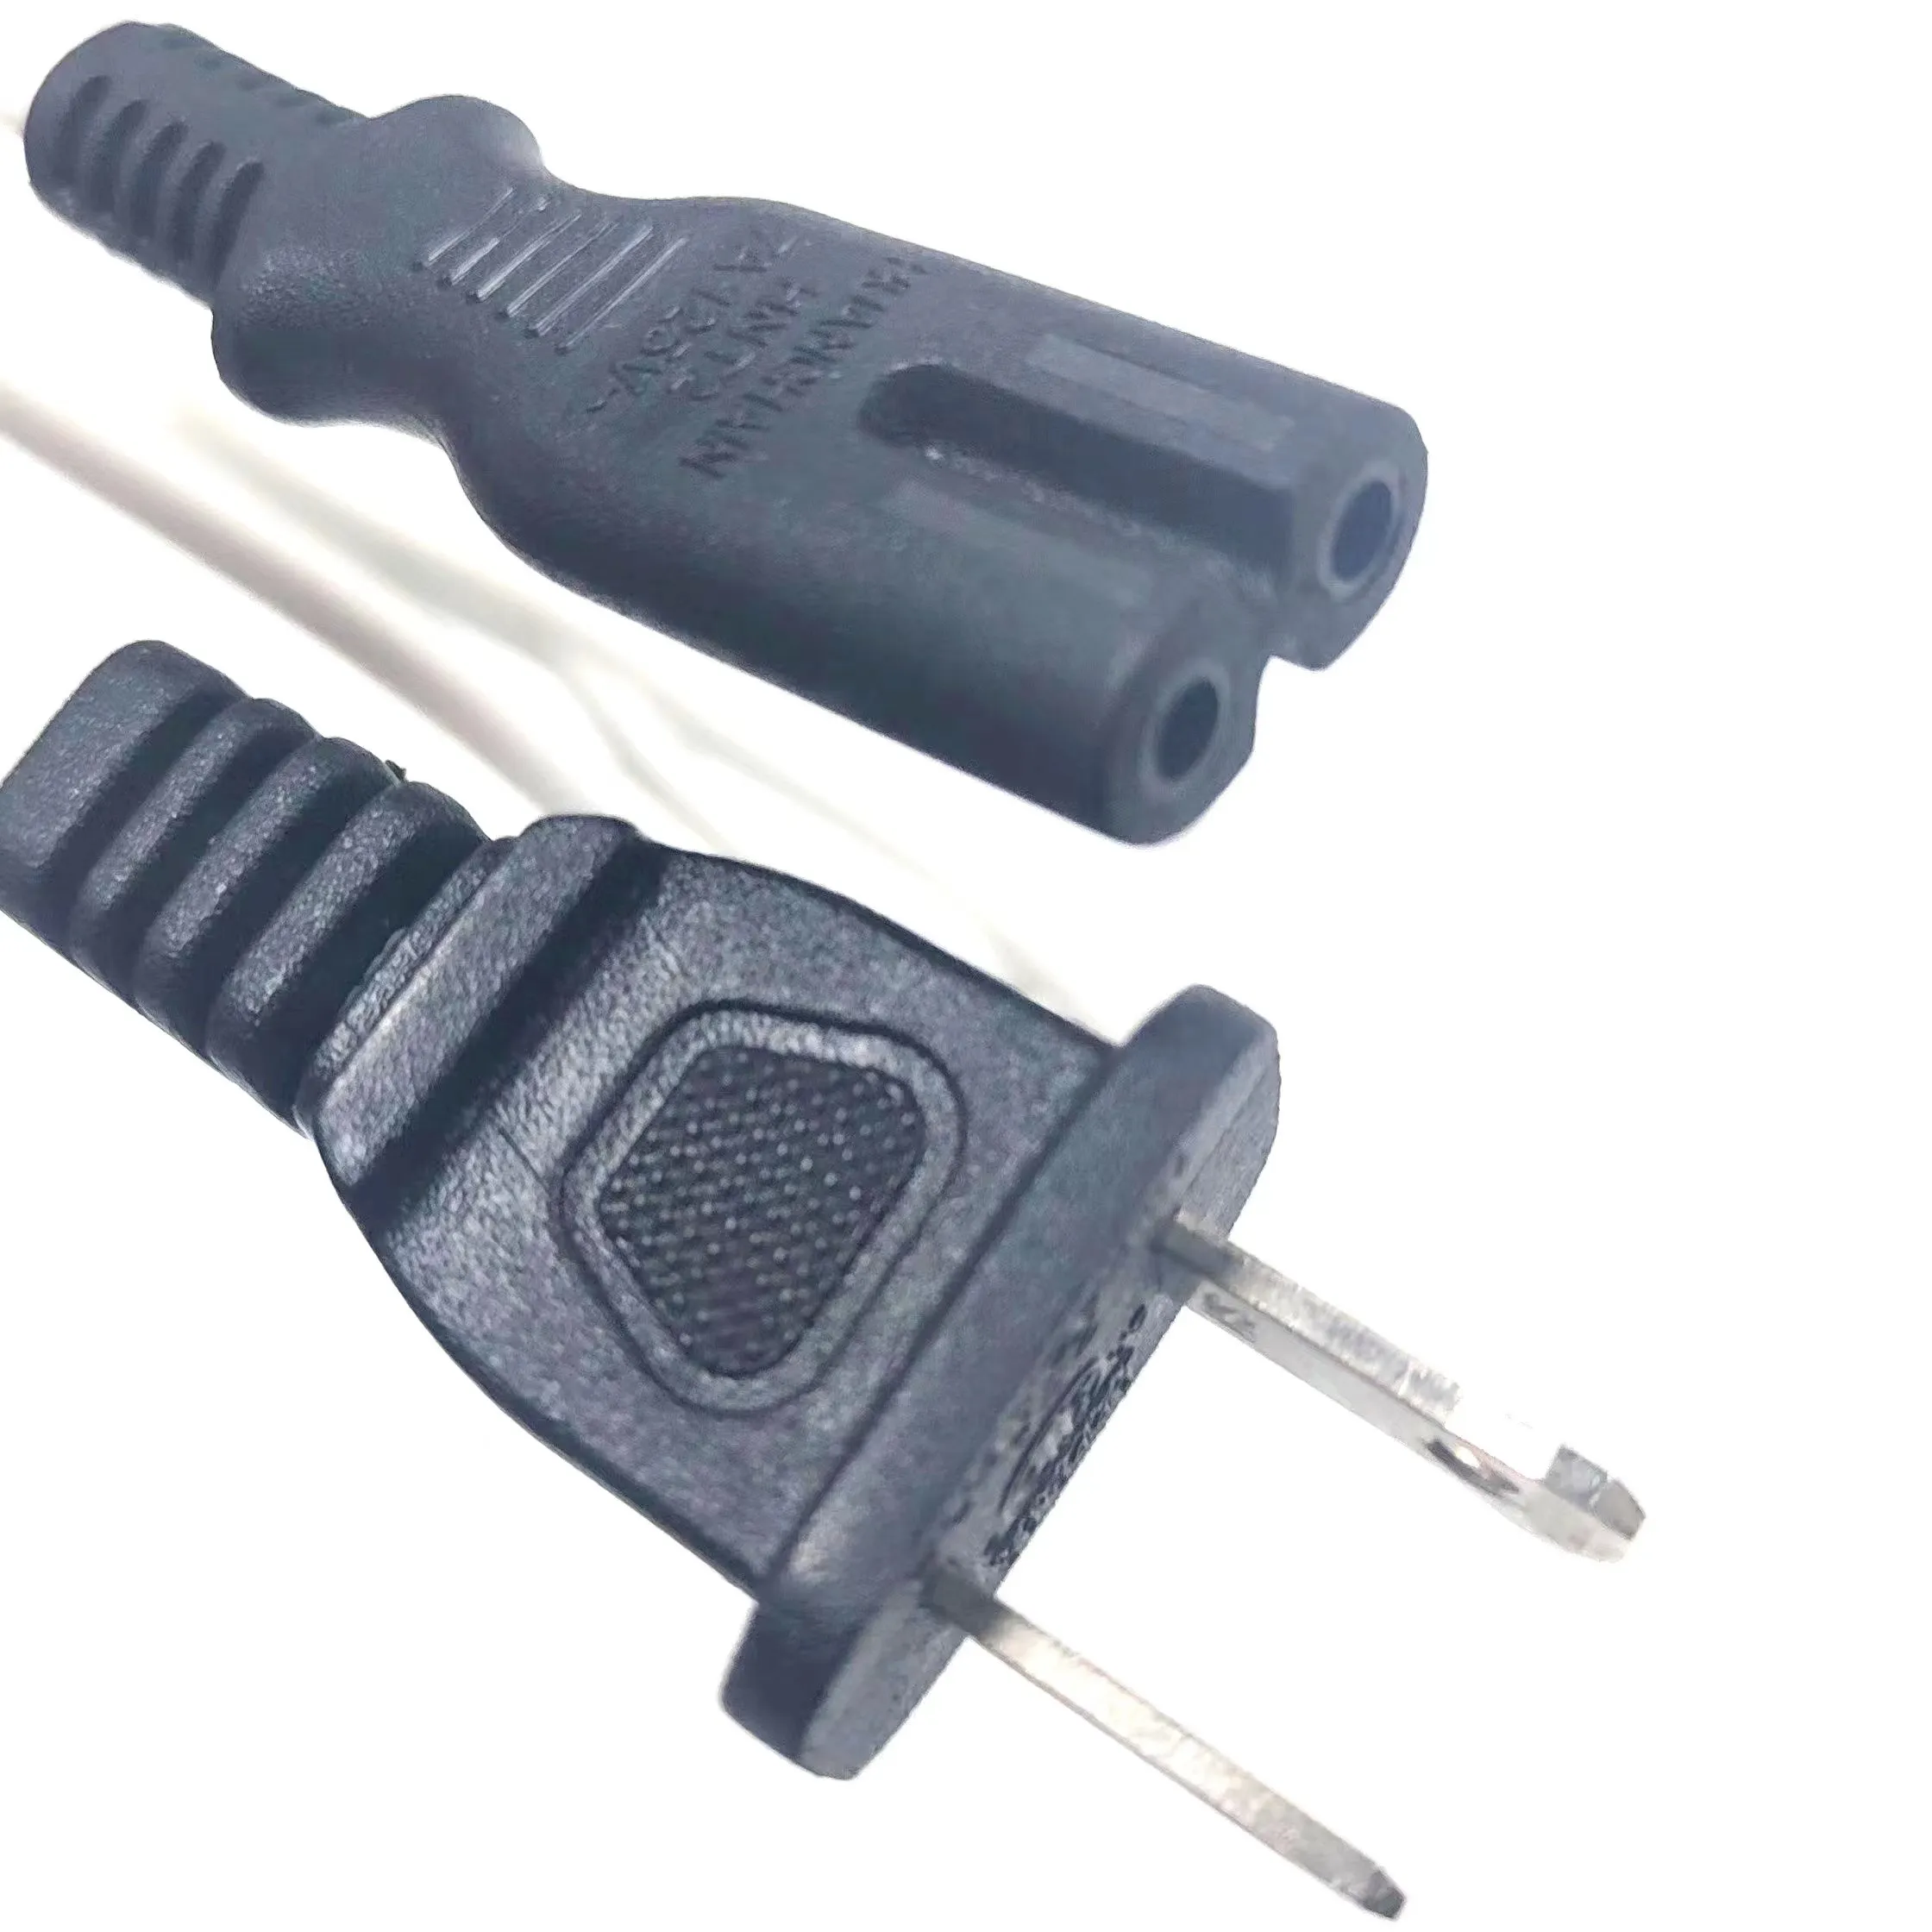 Cable de alimentación de TV de 6 pies estándar de EE. UU. 2 clavijas Nema 1-15P a IEC C7 cable de extensión de alimentación no polarizado Cable de pared de CA